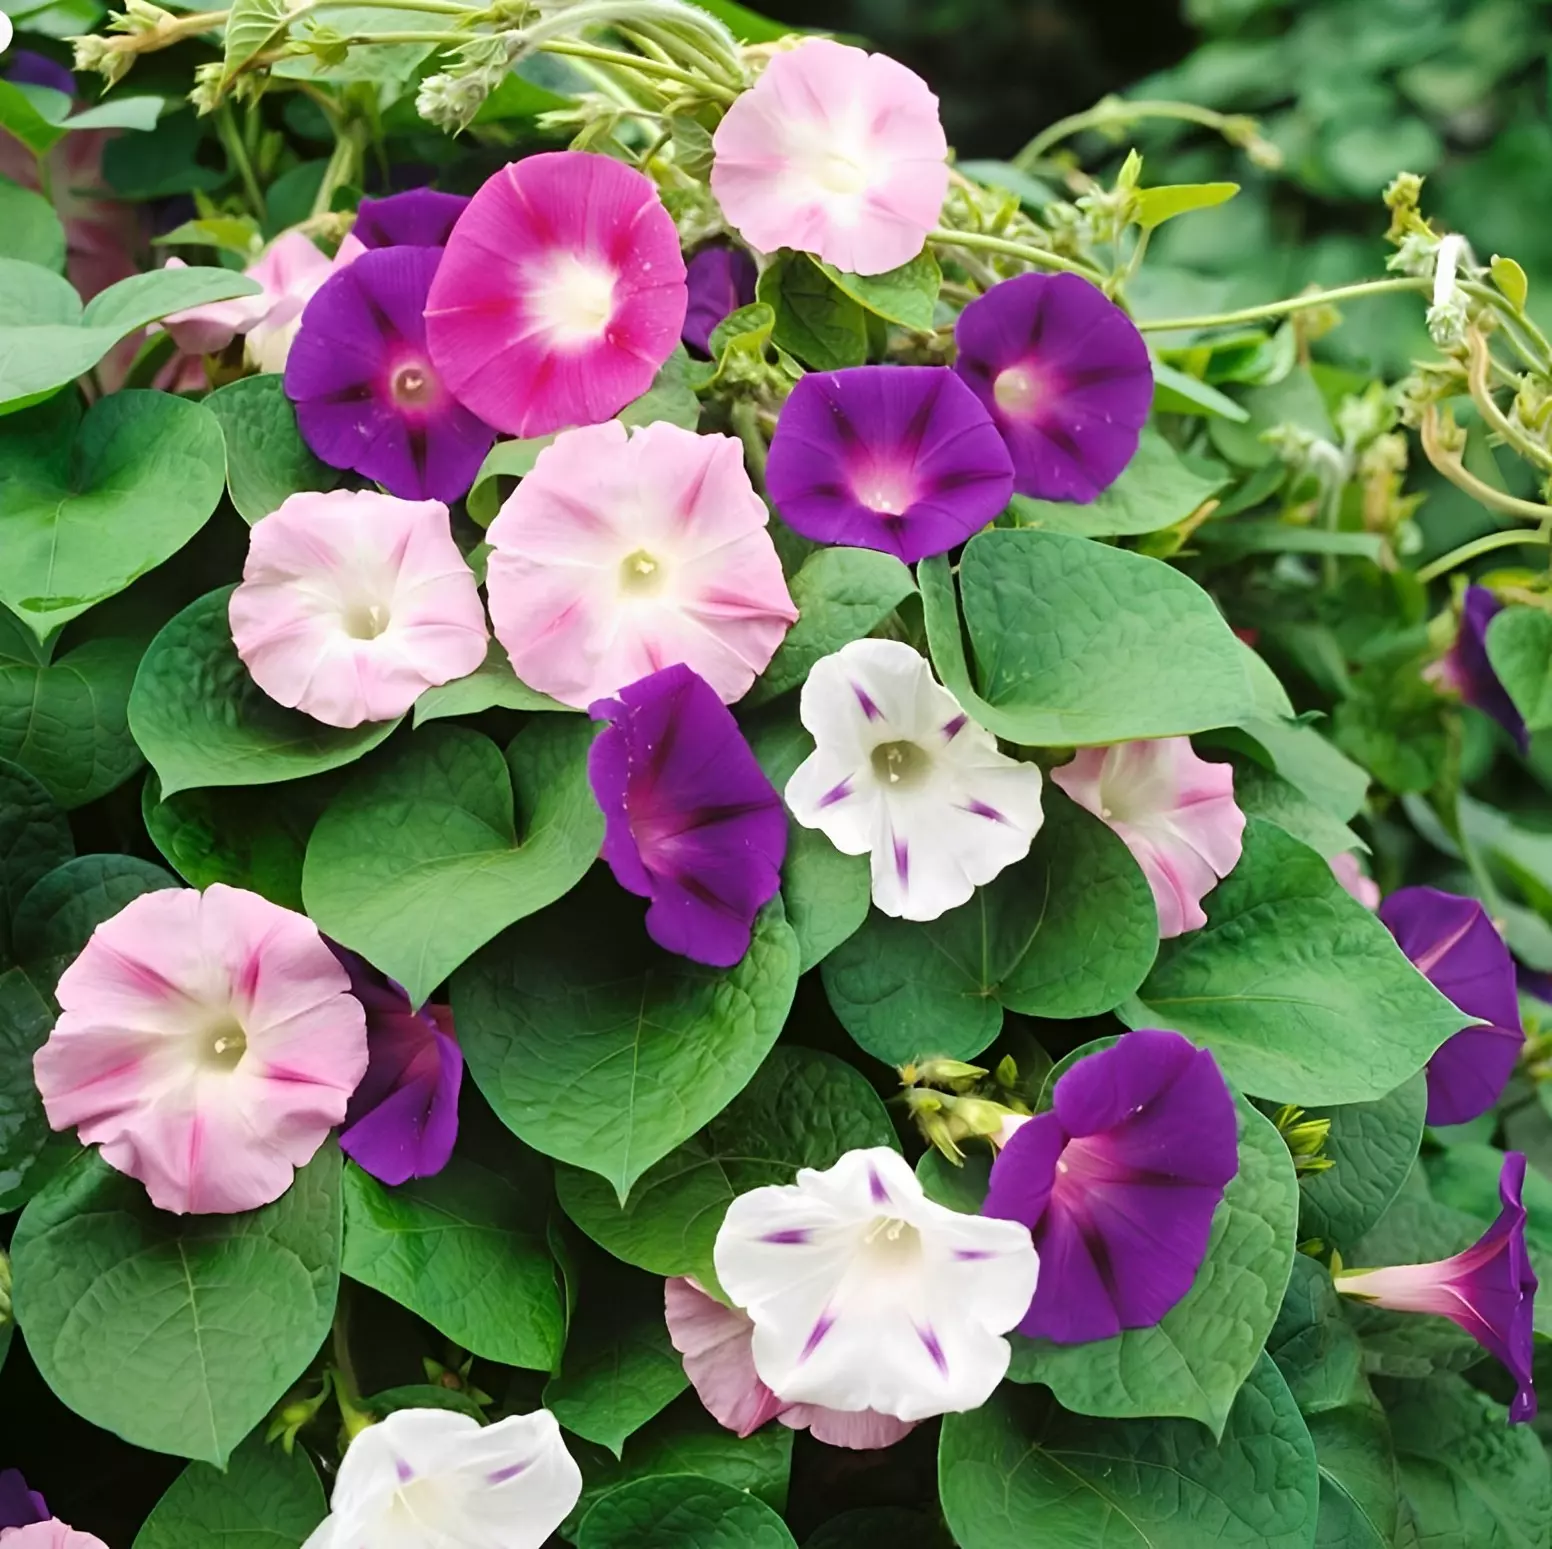 le wilec a fleurs bicouleurs dans les tons blanc rose violet